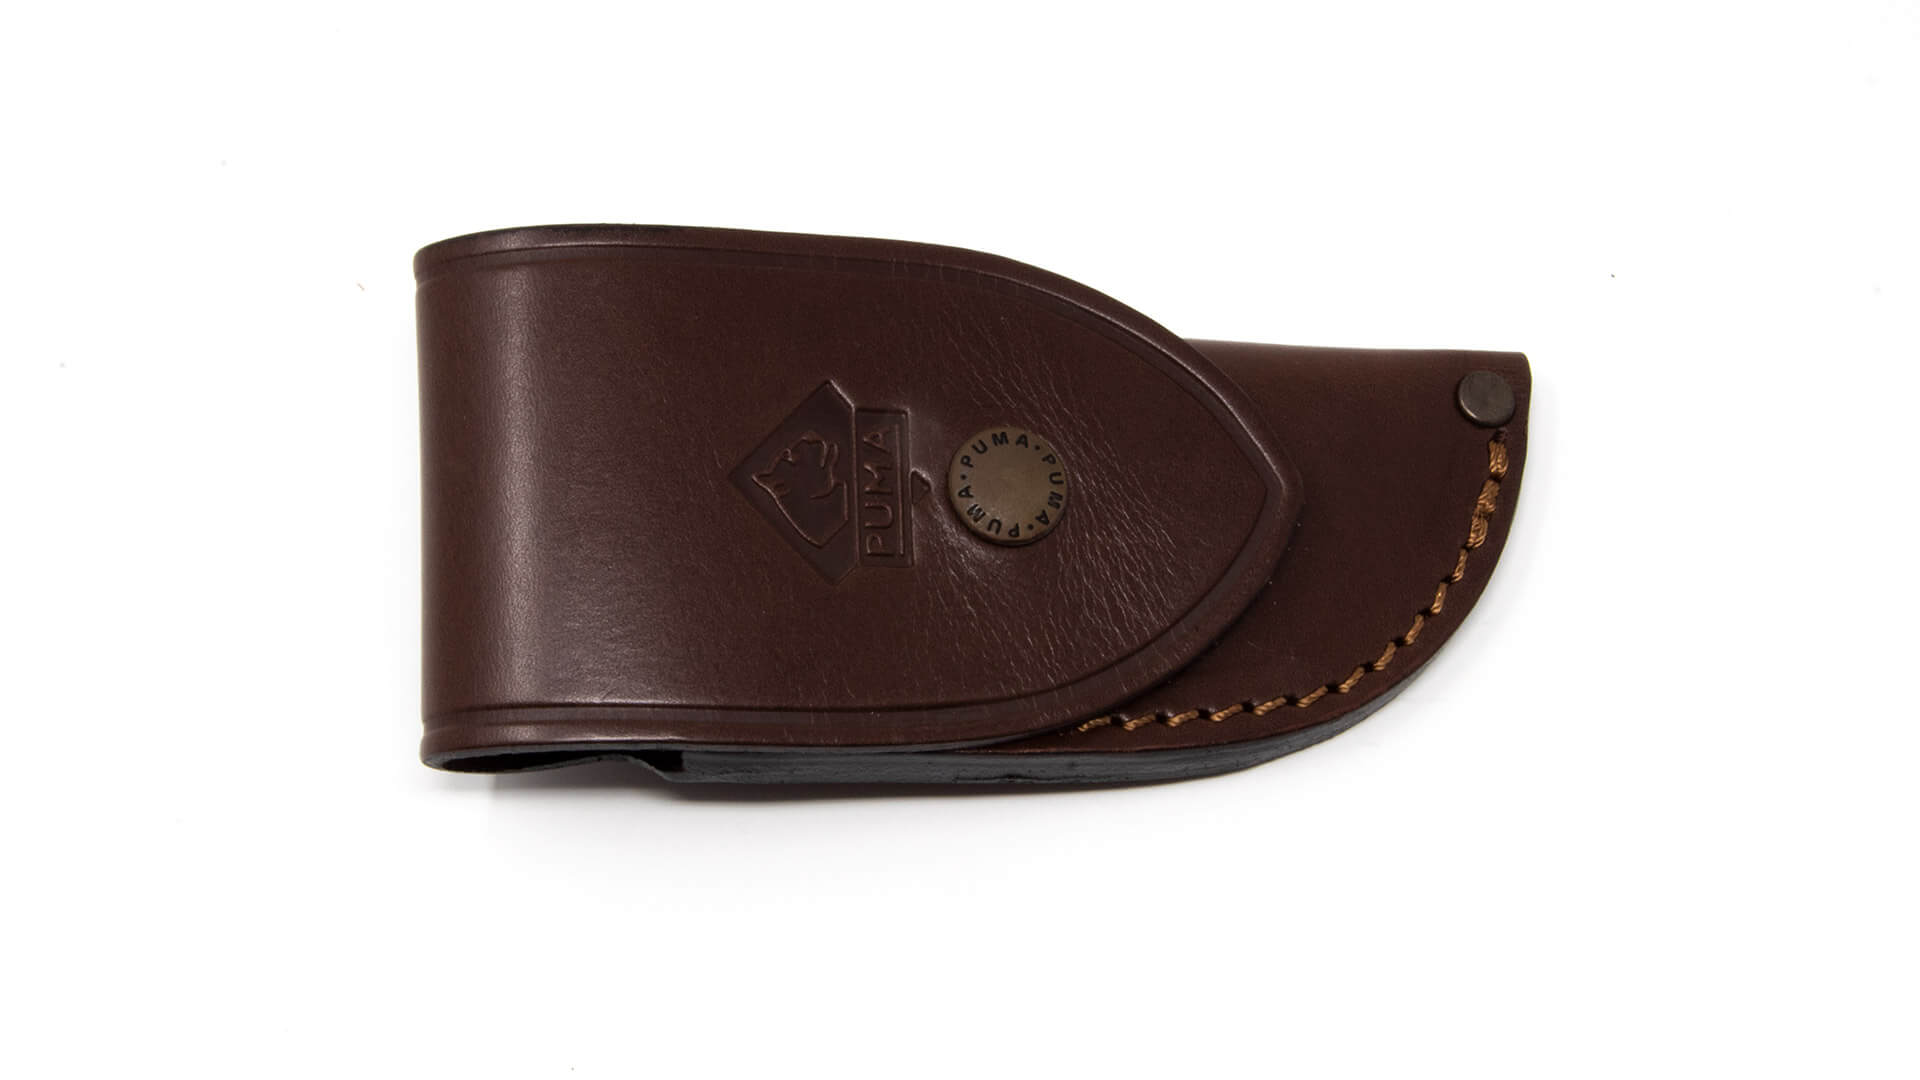 puma-belt-case-brown-pocket-knife-993567